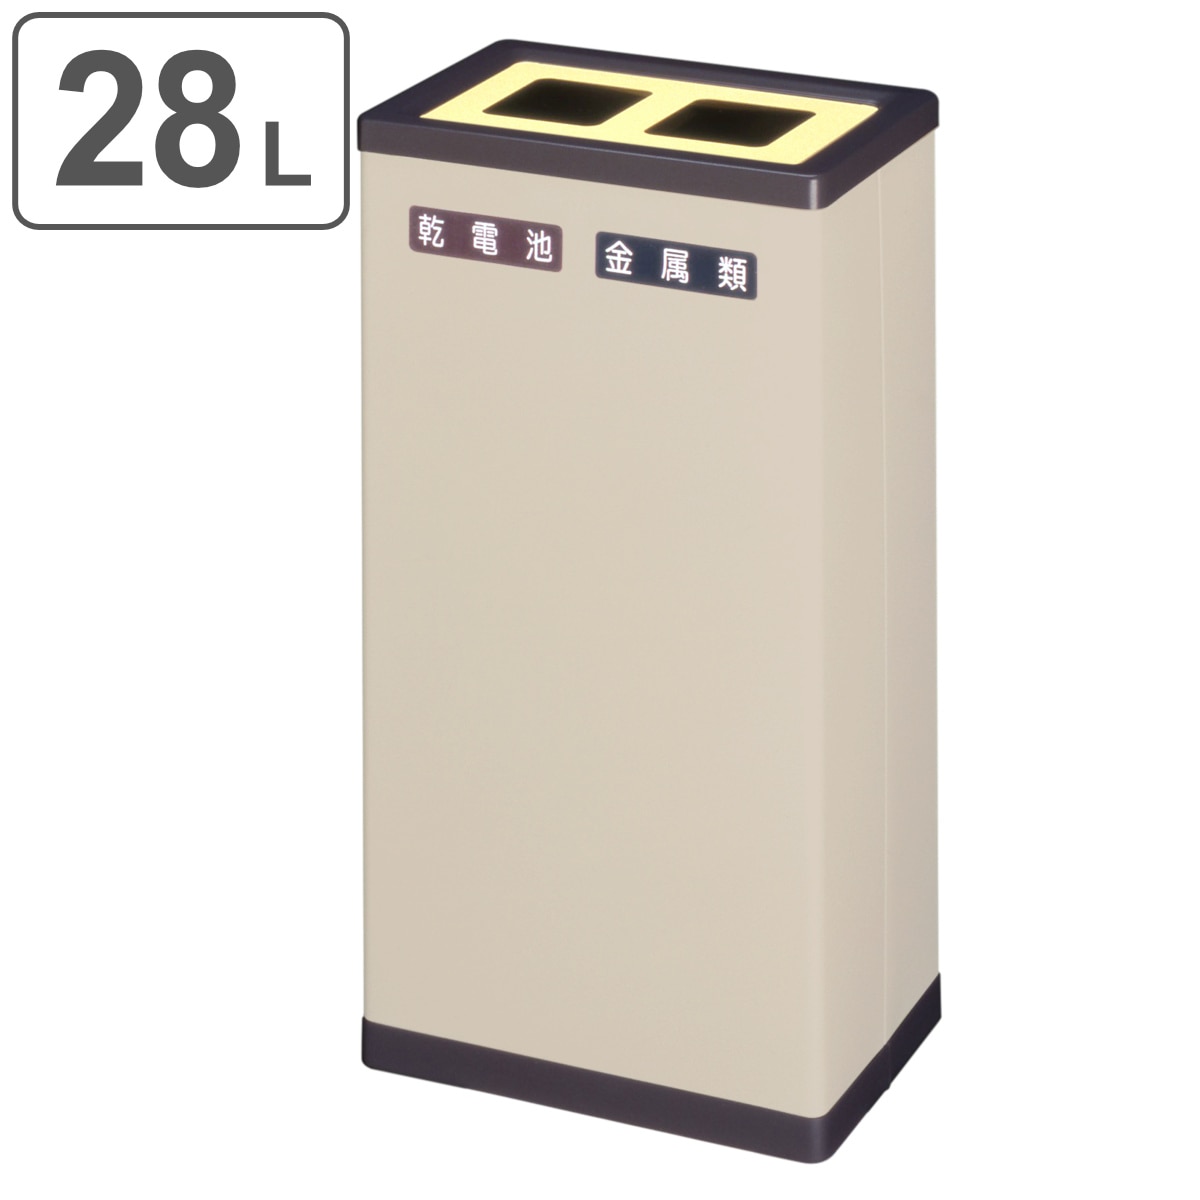 ゴミ箱 | (4) ダストボックス/ゴミ箱 (130G 本体) ブルー 丸型